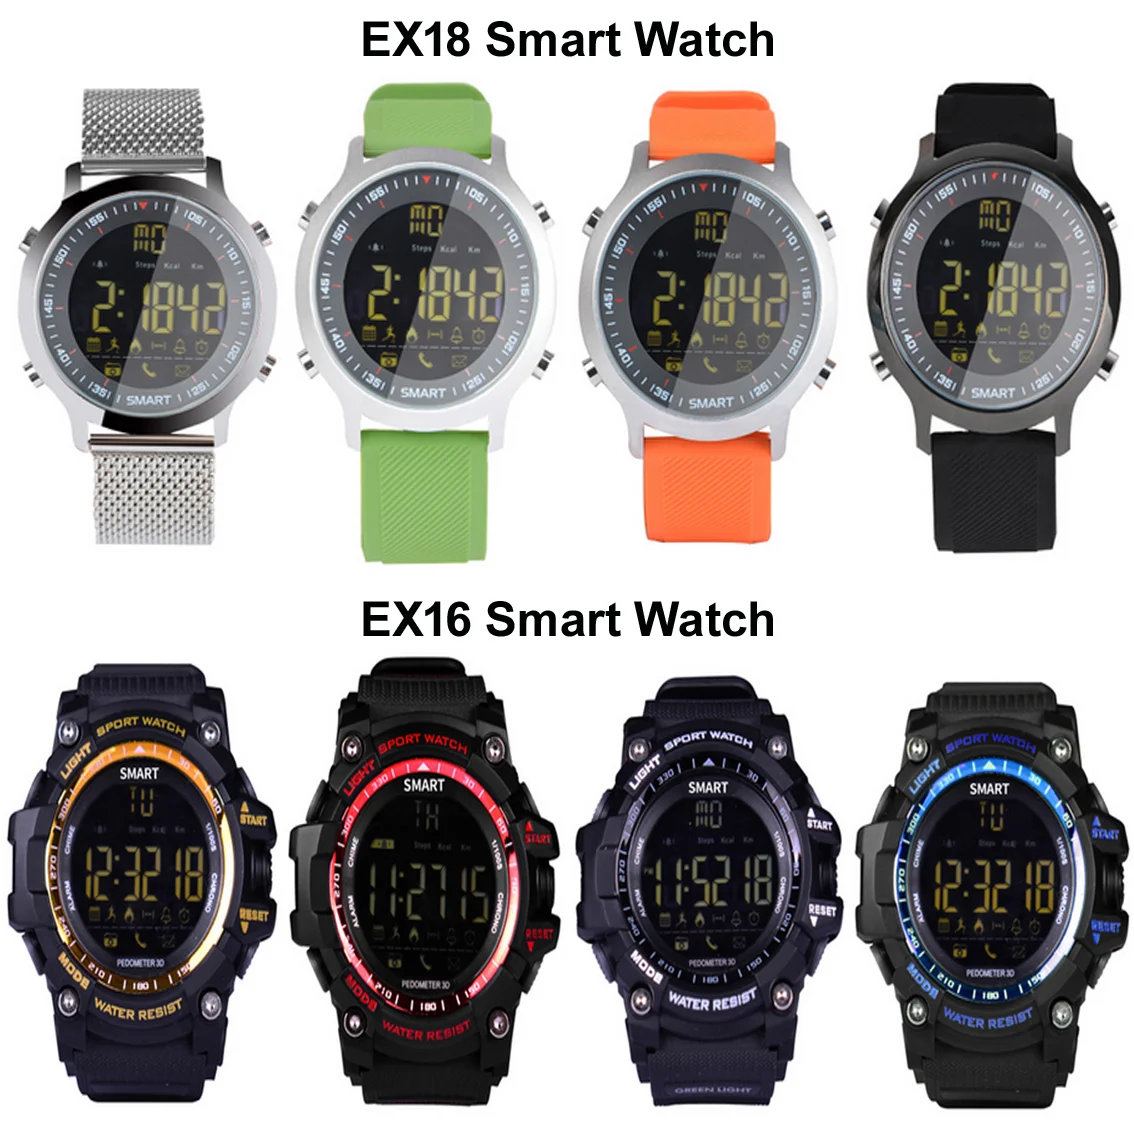 EX18/EX16 Bluetooth водонепроницаемые спортивные Смарт часы Открытый пульт дистанционного управления Pedemeter фото шагомер длительное время ожидания для Android iOS